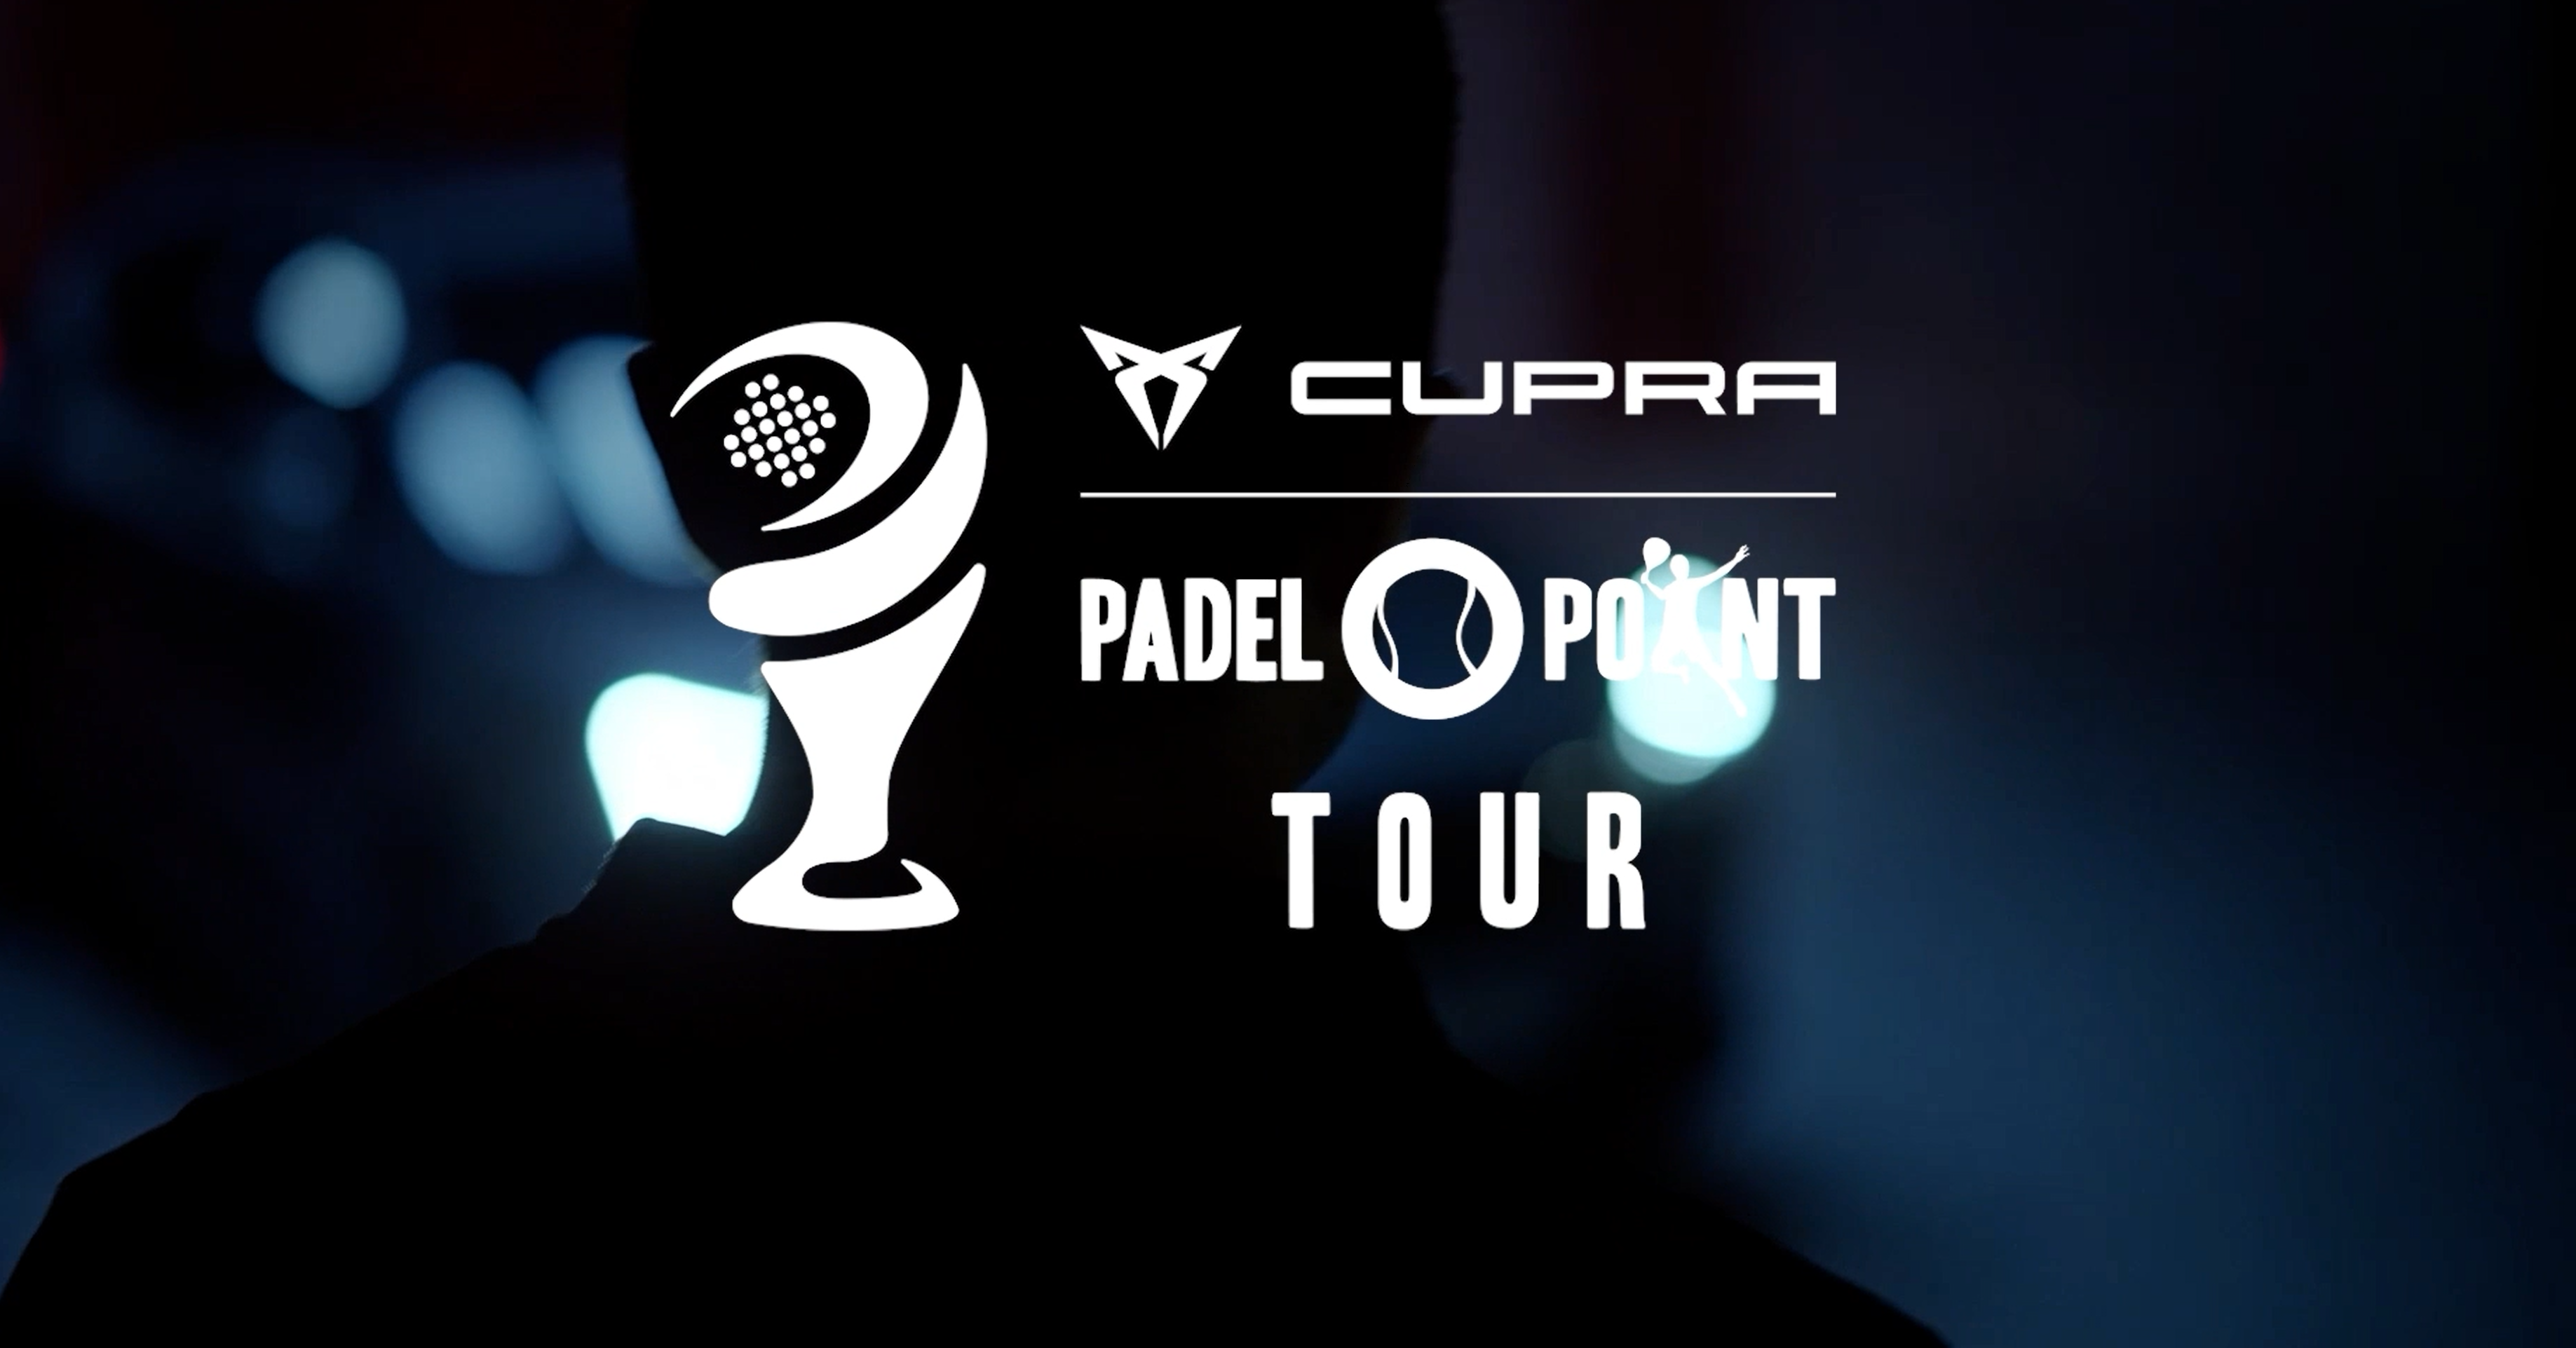 Der Cupra Final Master Padel-Point Tour entfaltet sich!